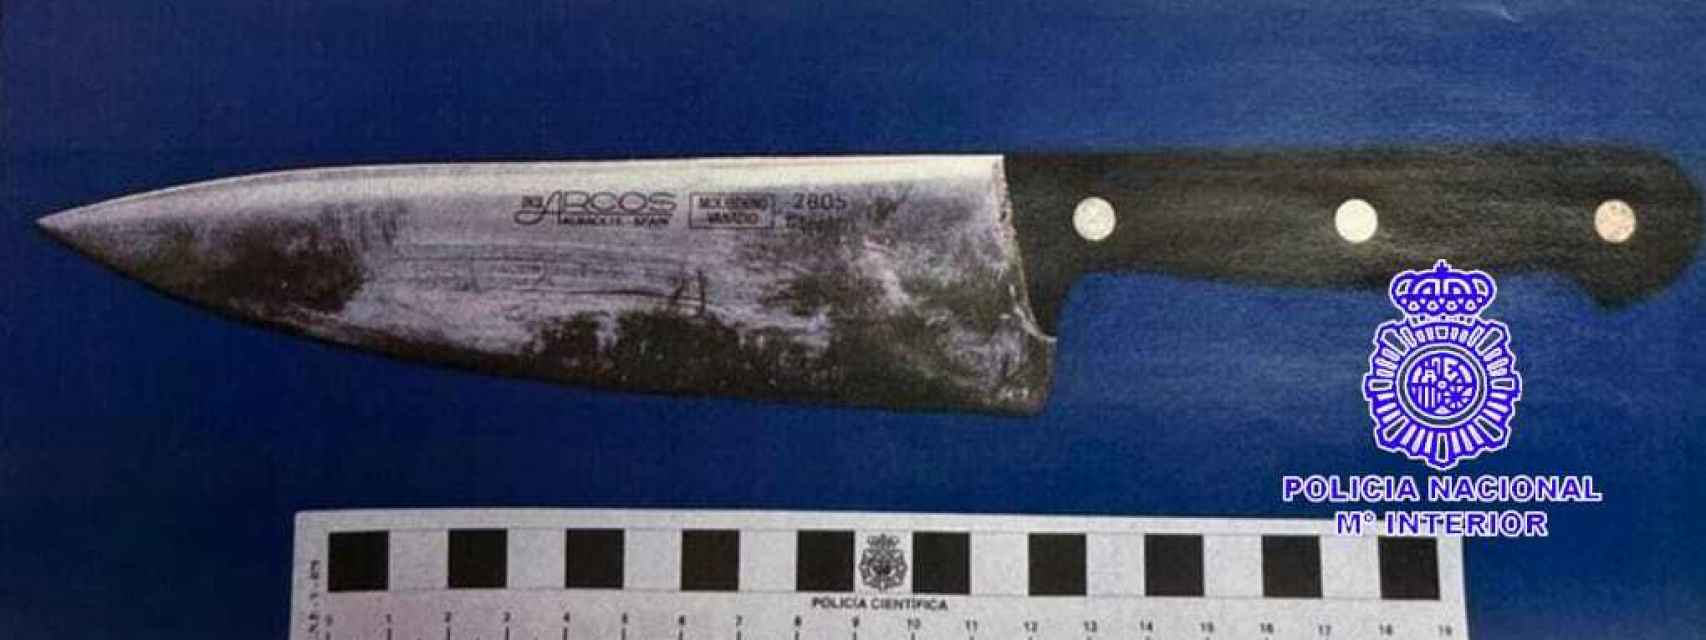 Imagen del cuchillo con el que el detenido amenazó a los niños